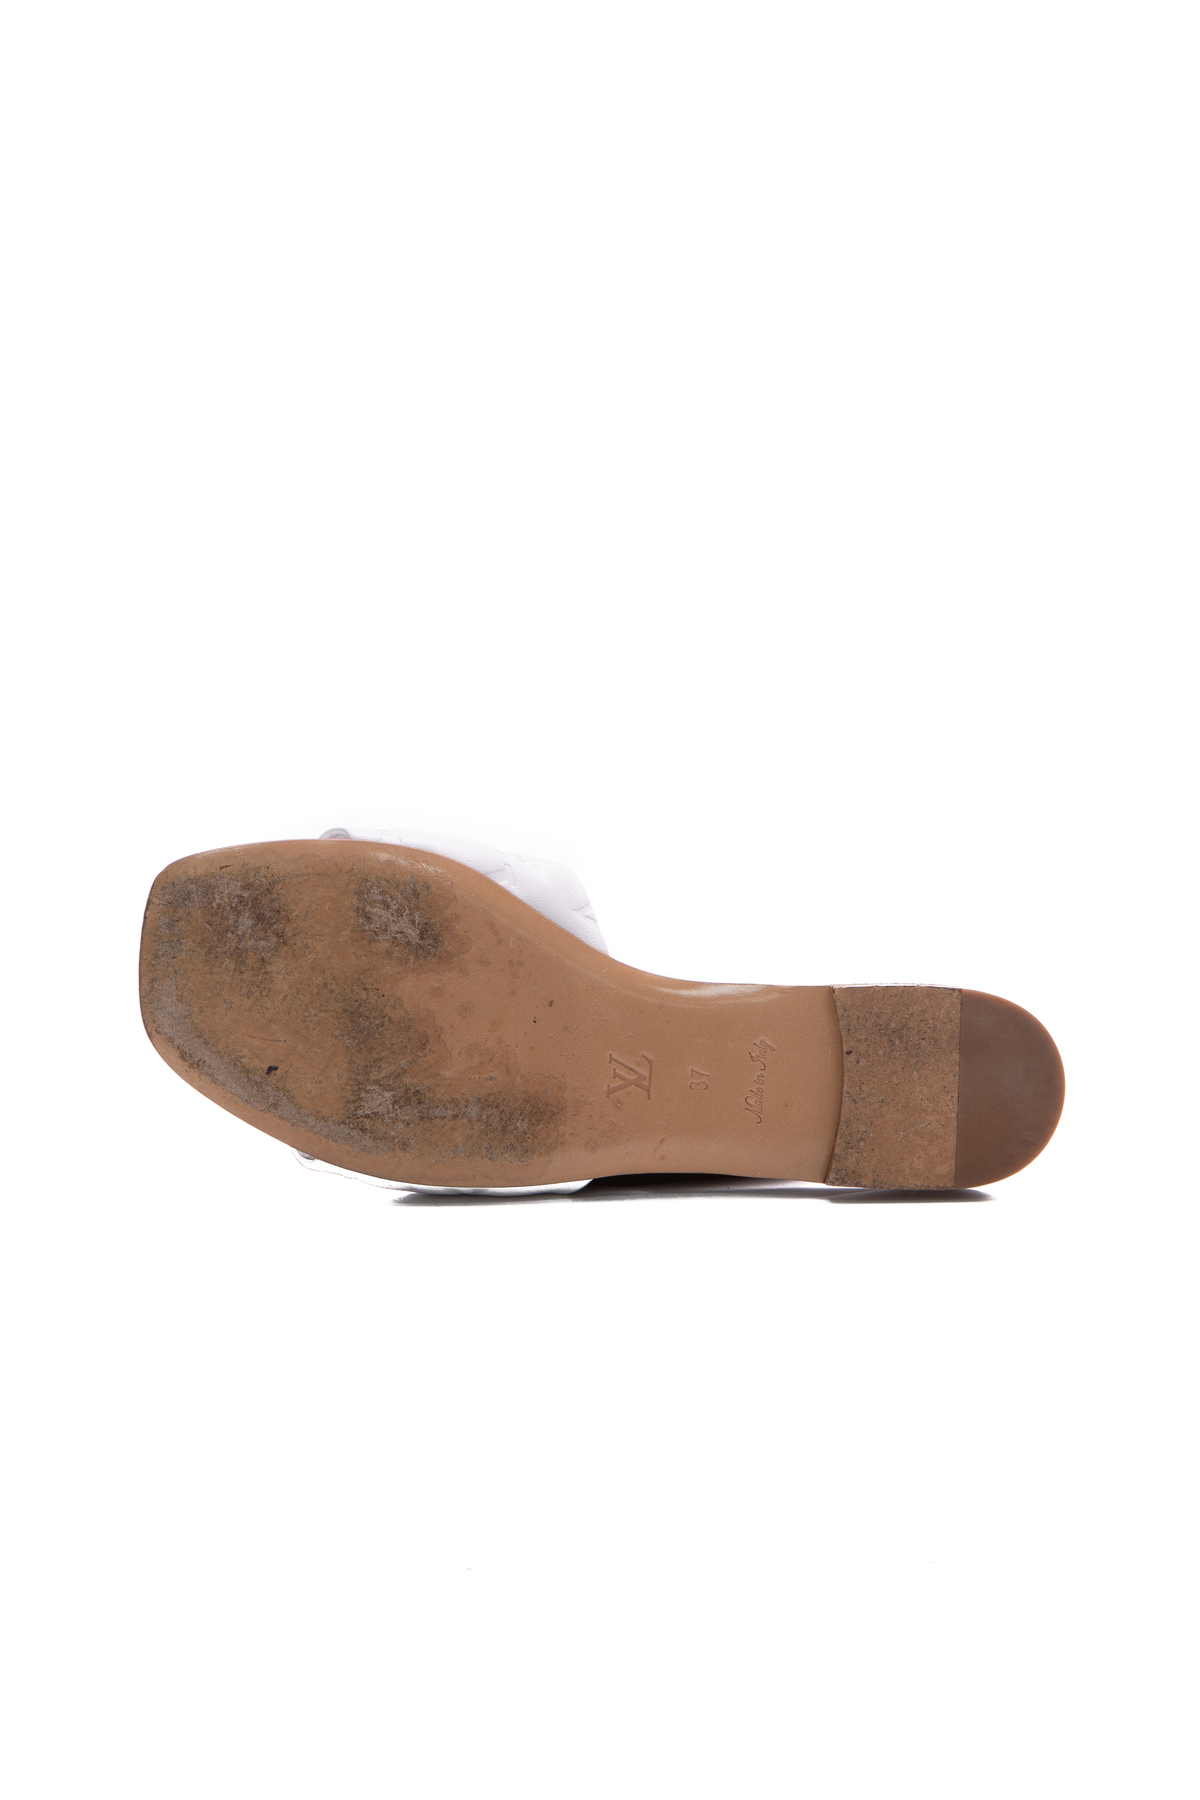 Louis Vuitton Revival Mule Nude Sandals Size 37 - BrandConscious